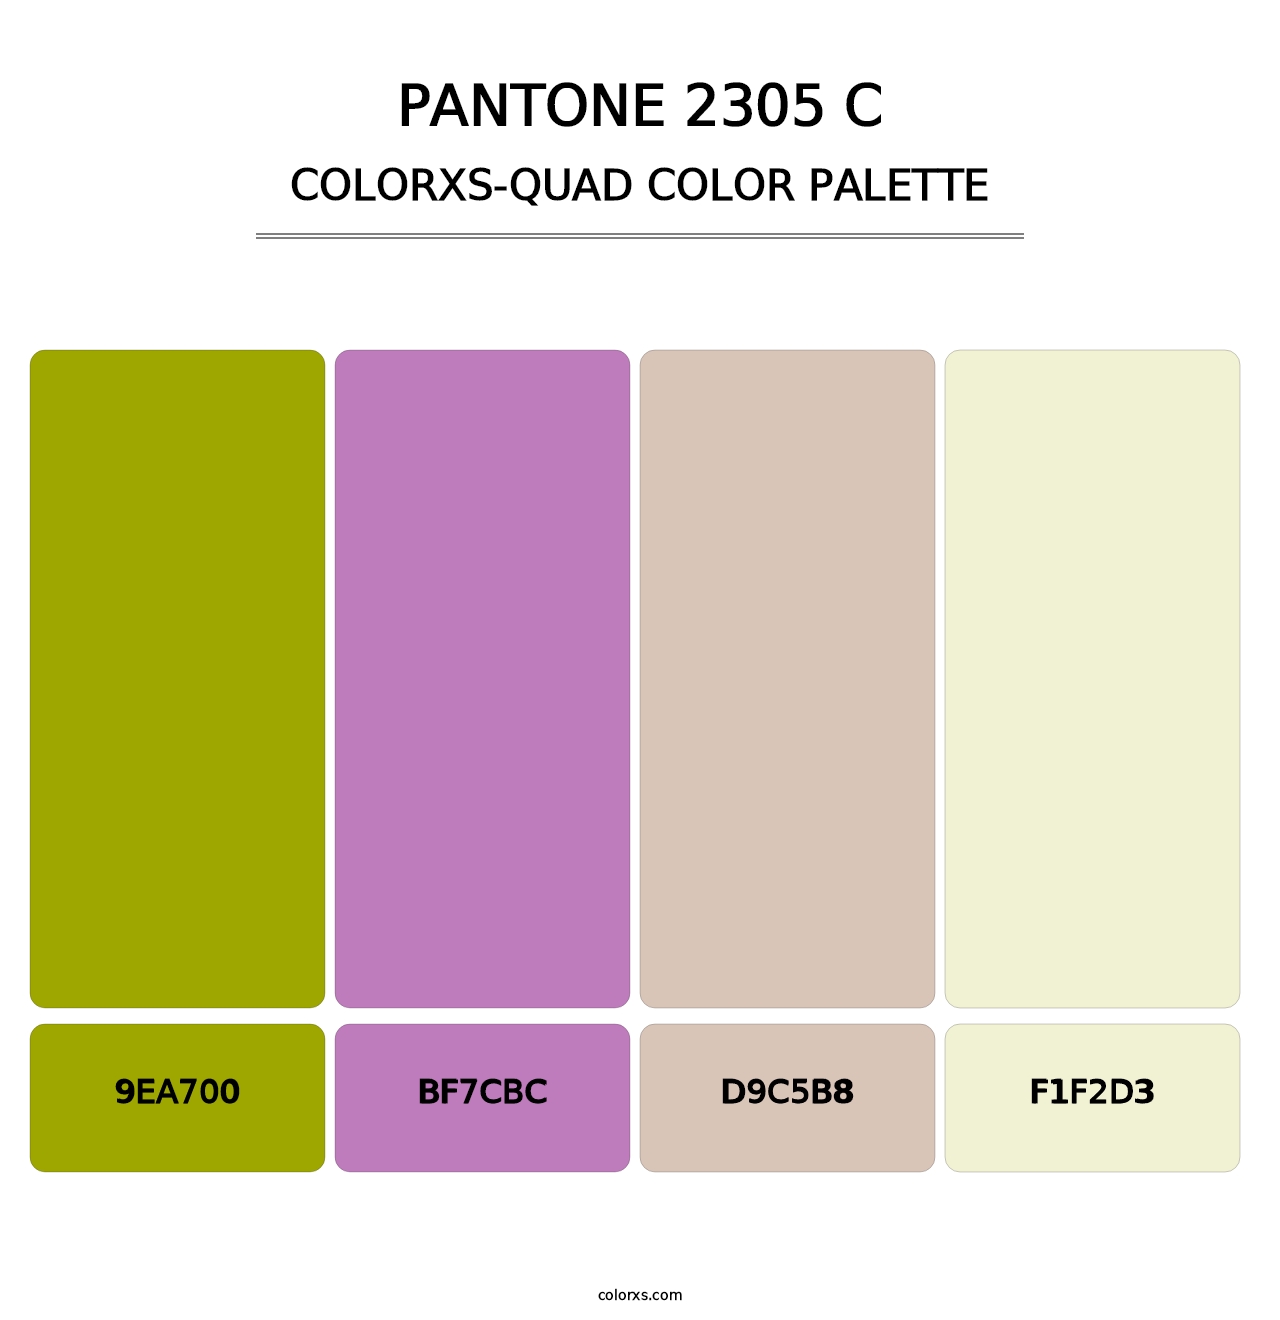 PANTONE 2305 C - Colorxs Quad Palette